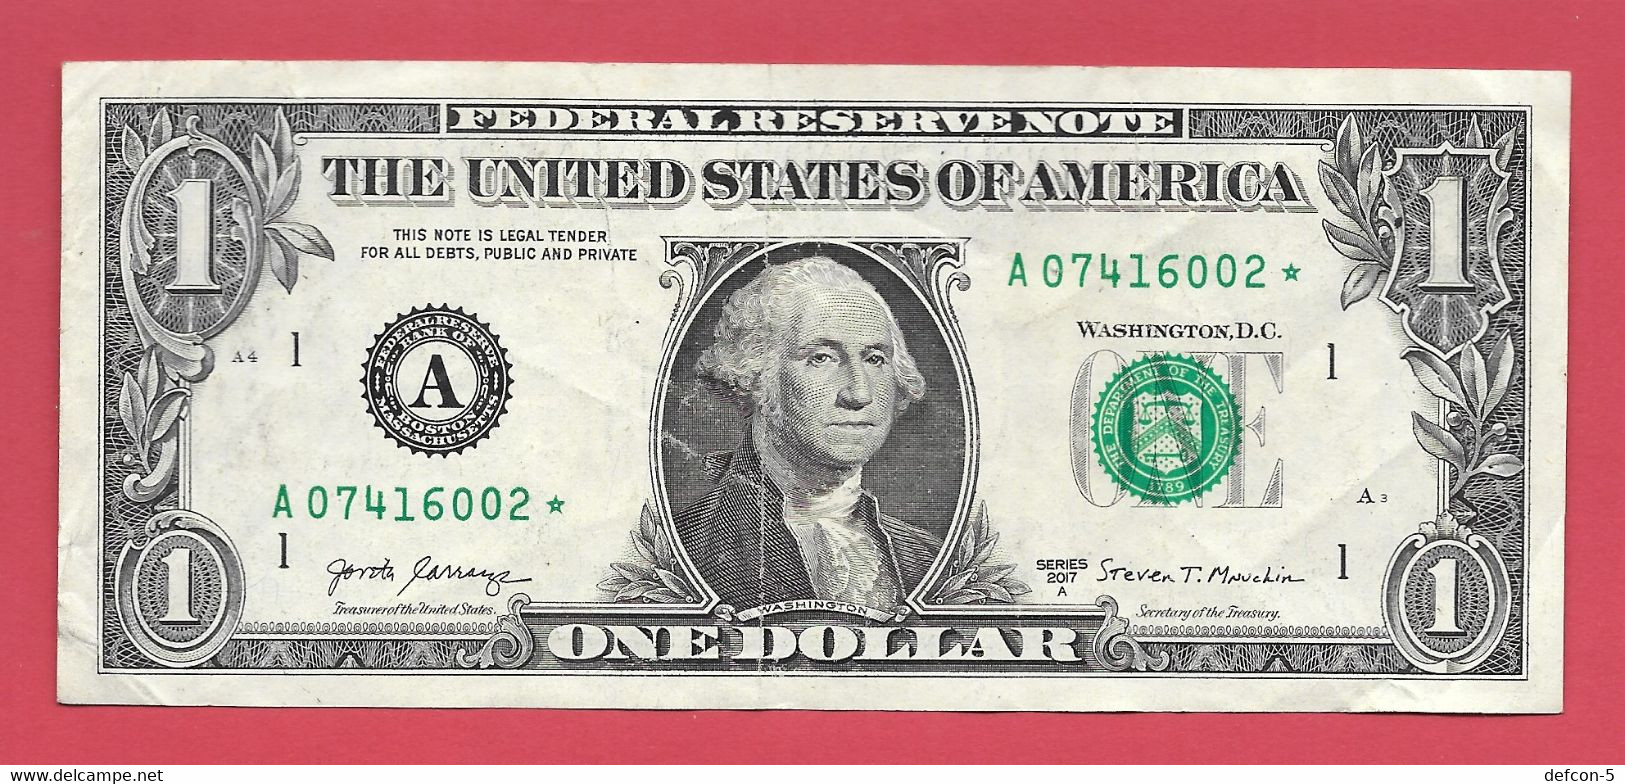 Rarität ! STAR-Note: 1 US-Dollar [2017] > A07416002* < 3. Lauf Mit 3.200.000 {$046-001} - National Currency